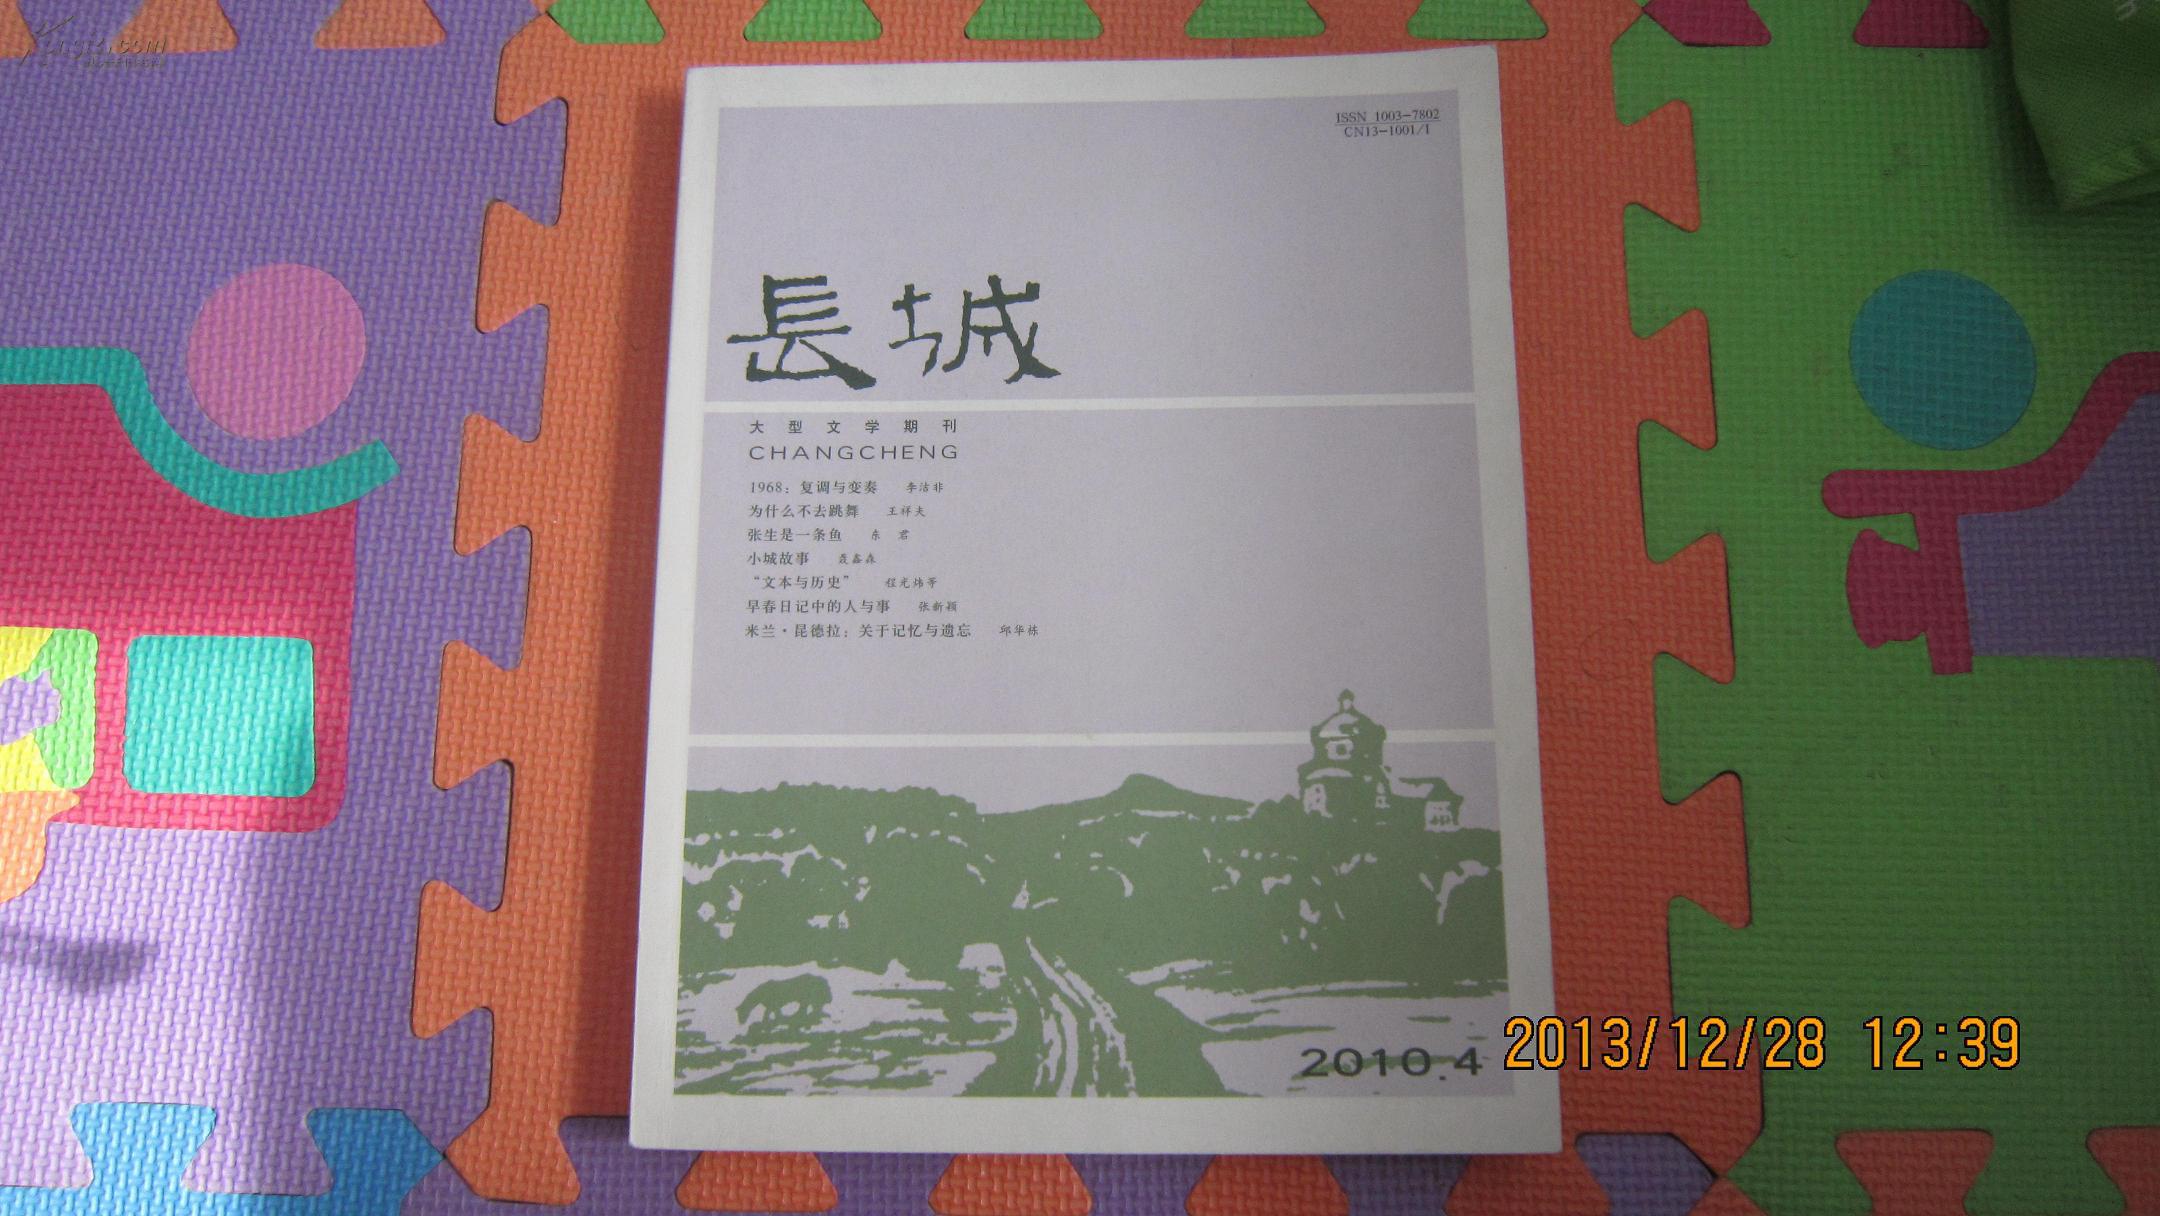 大型文学期刊《长城》2010年第2、3、4期